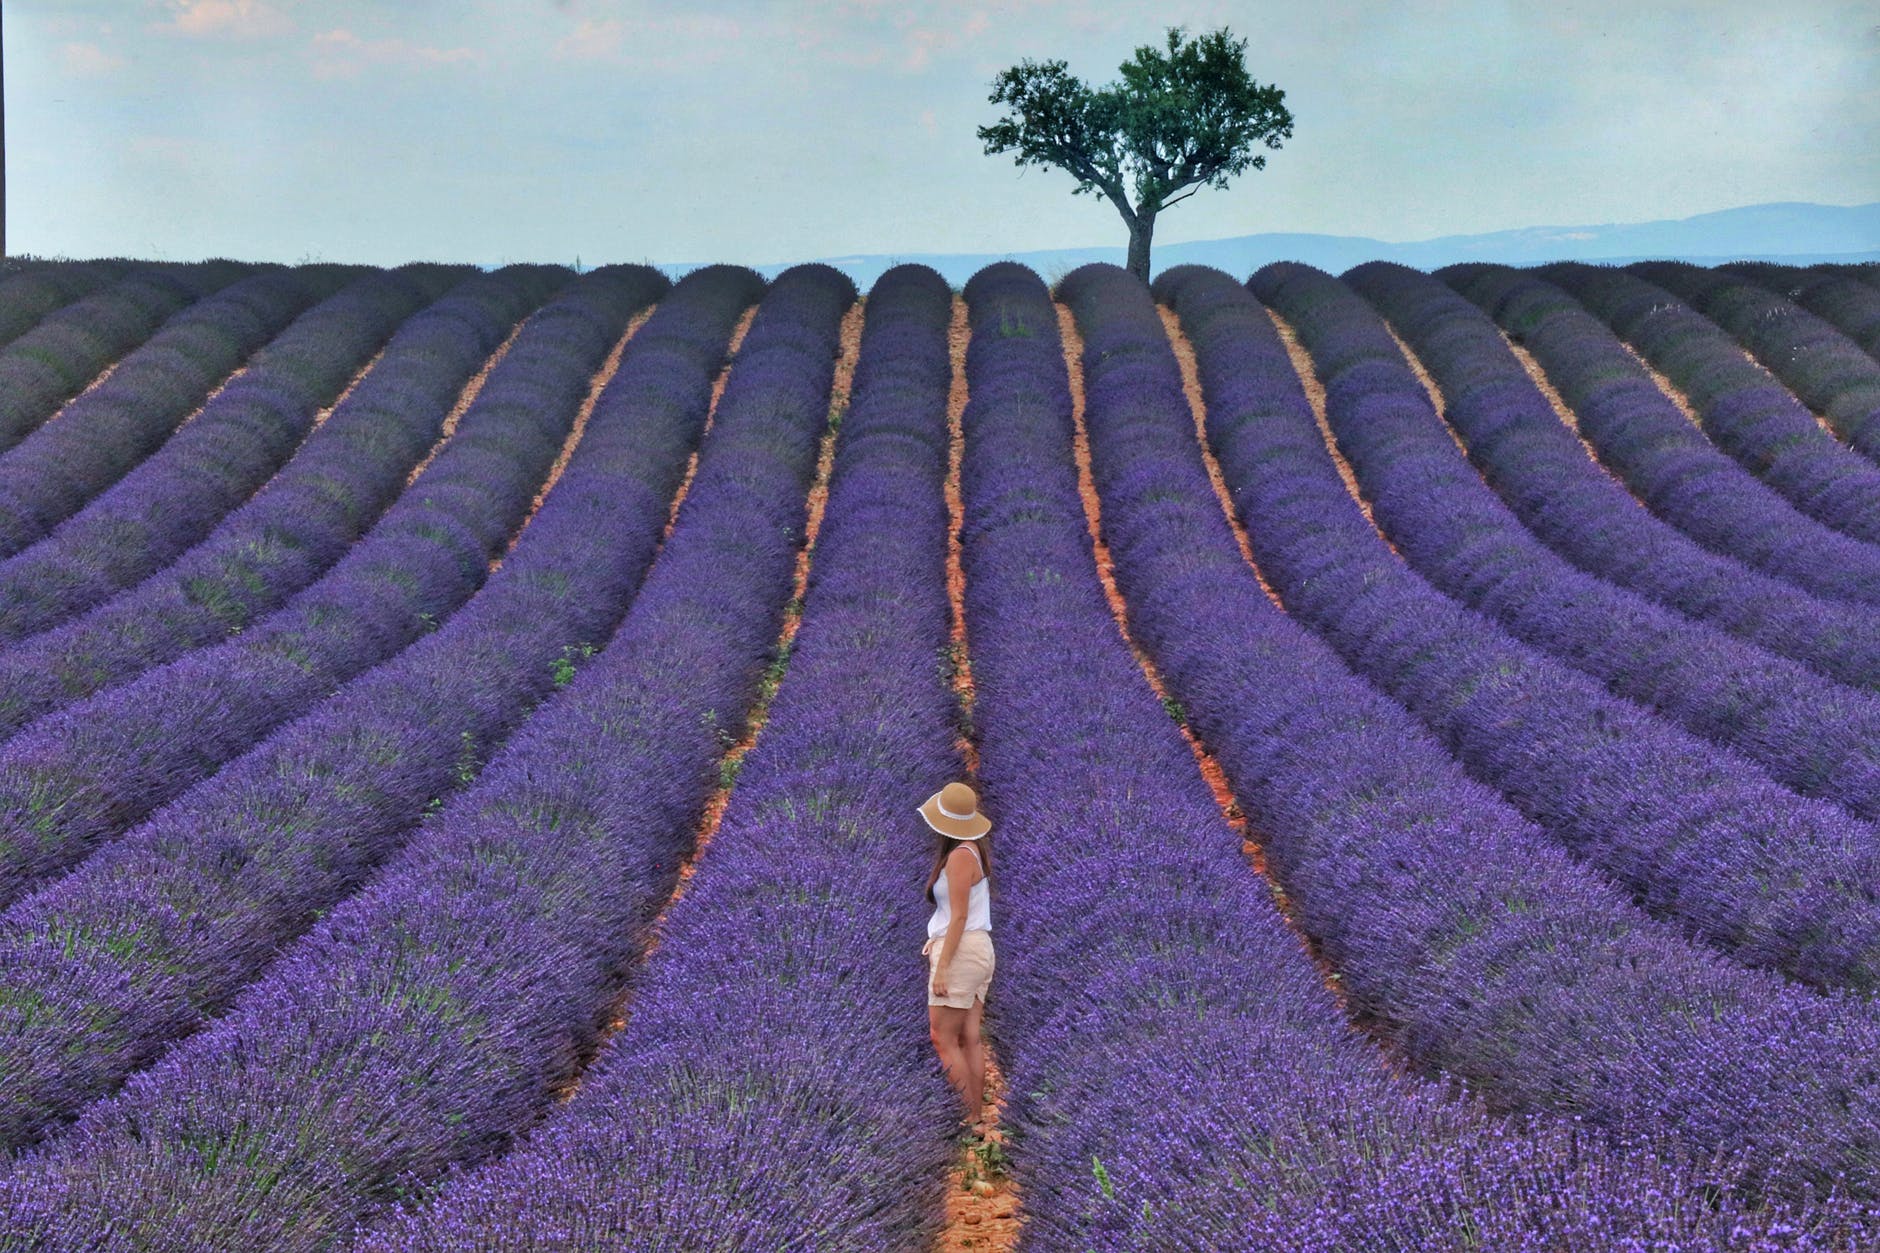 <img src="ana.jpg" alt="ana lavender field"/> 